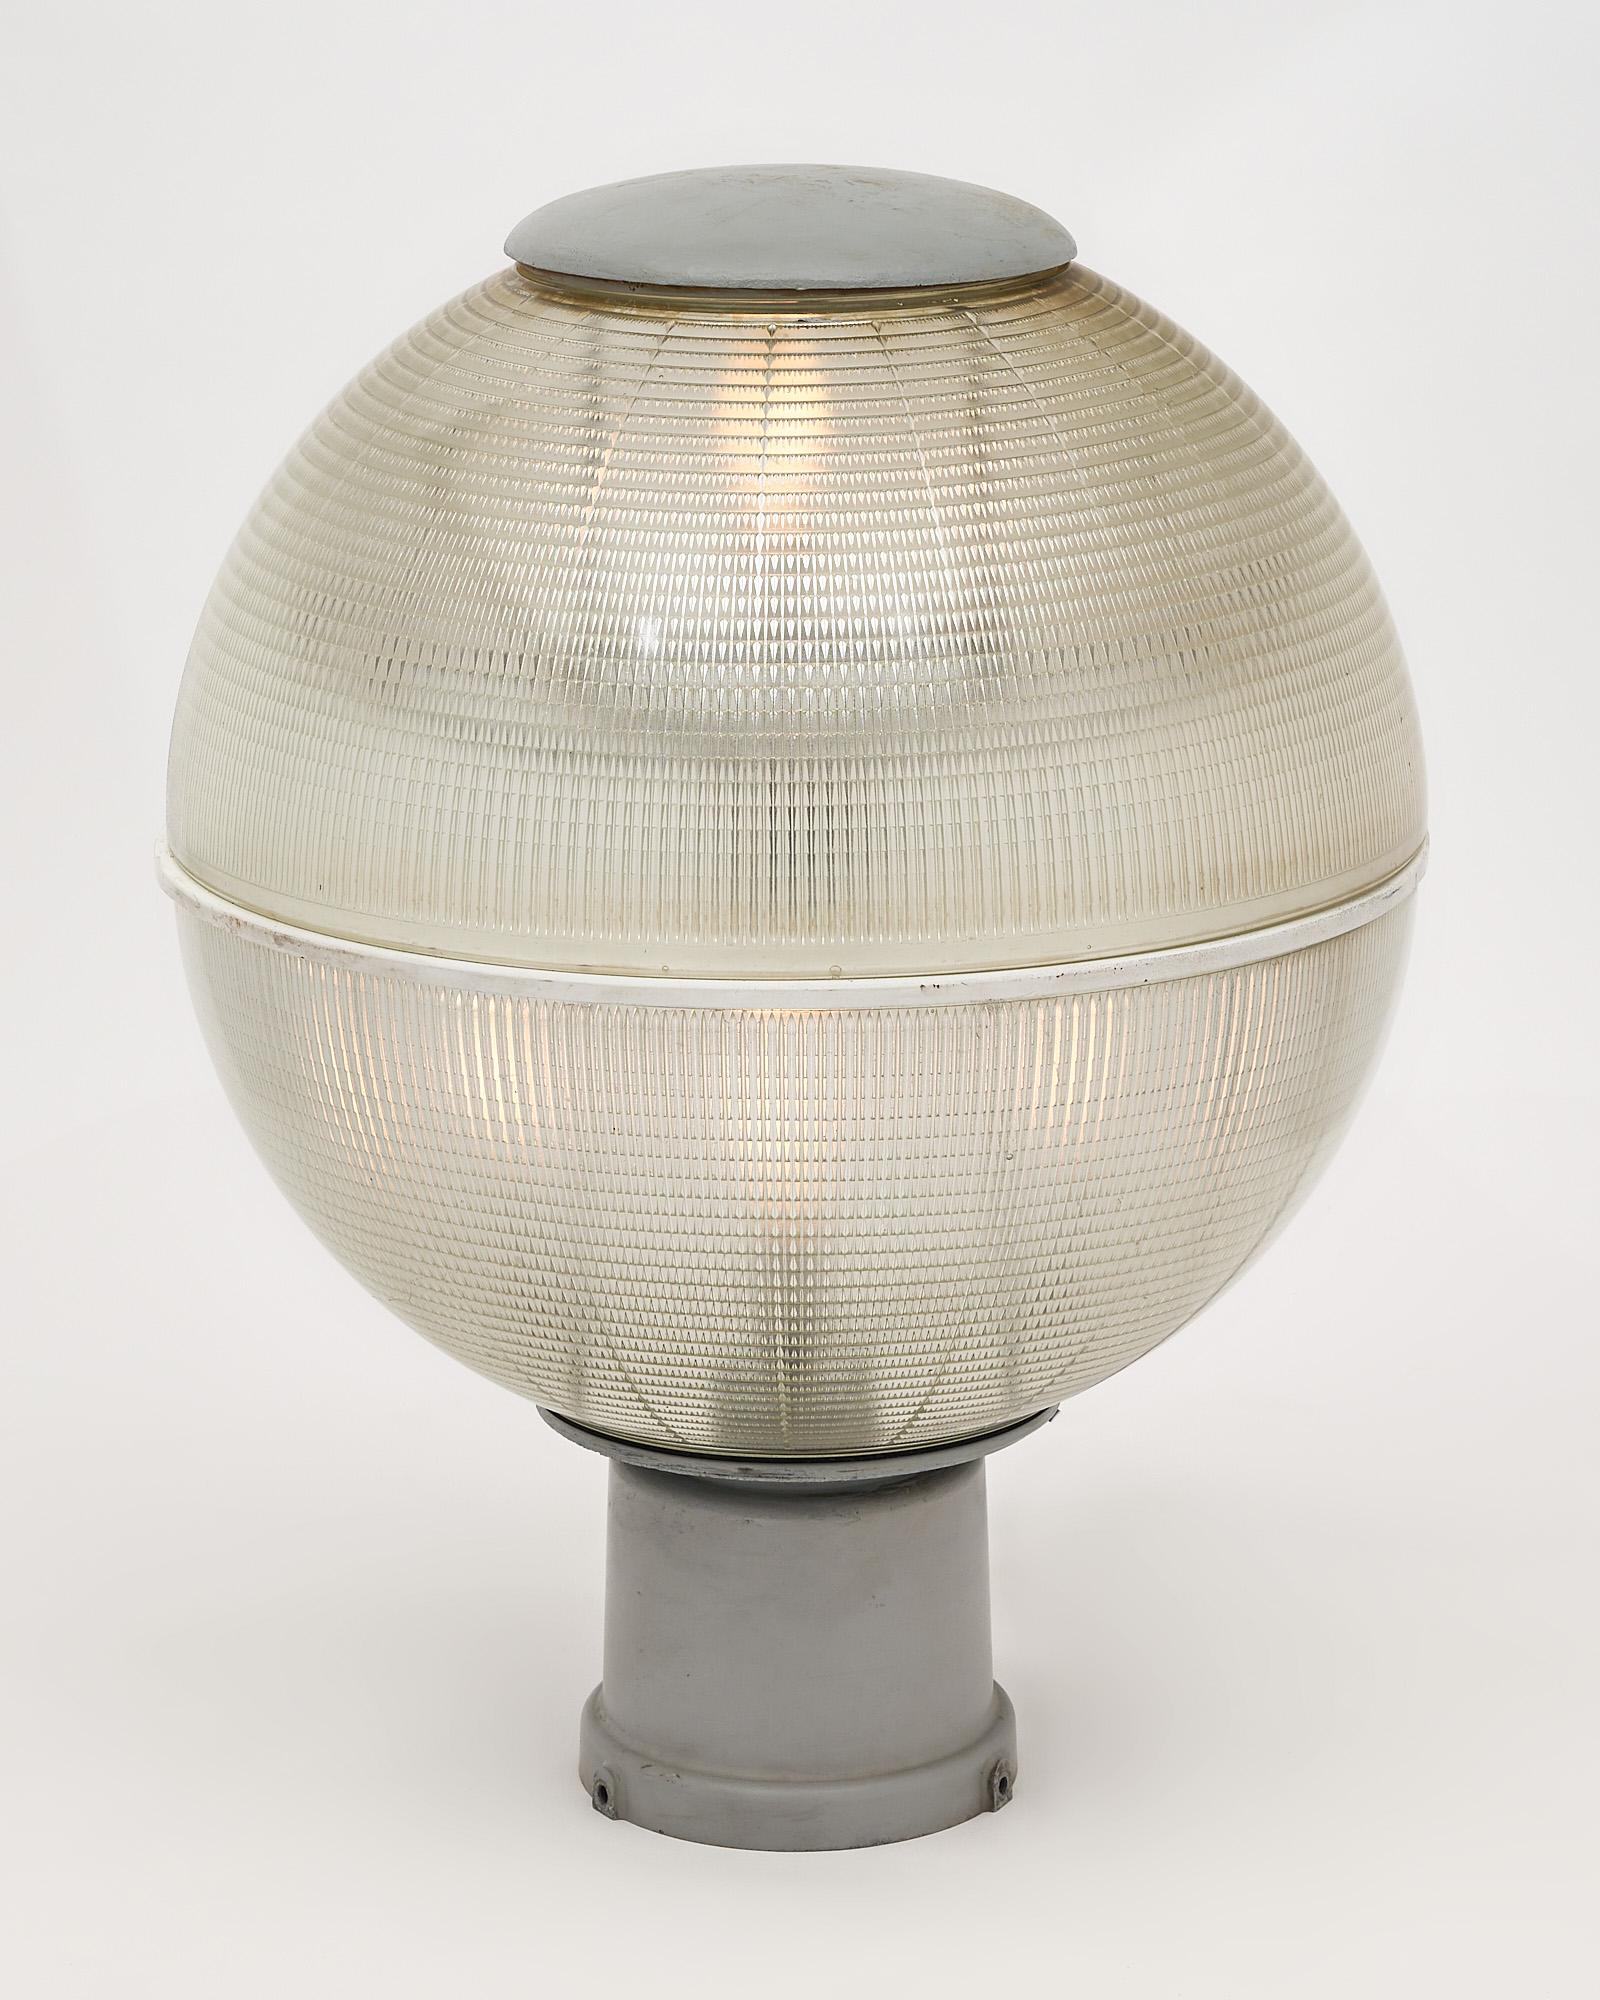 Ein seltenes Paar Holophane-Lampen aus Nizza, Frankreich. Hergestellt von der renommierten Firma BBT, die sich auf Stadtbeleuchtung in Paris und Nizza spezialisiert hat. Sie wurden auf der berühmten 